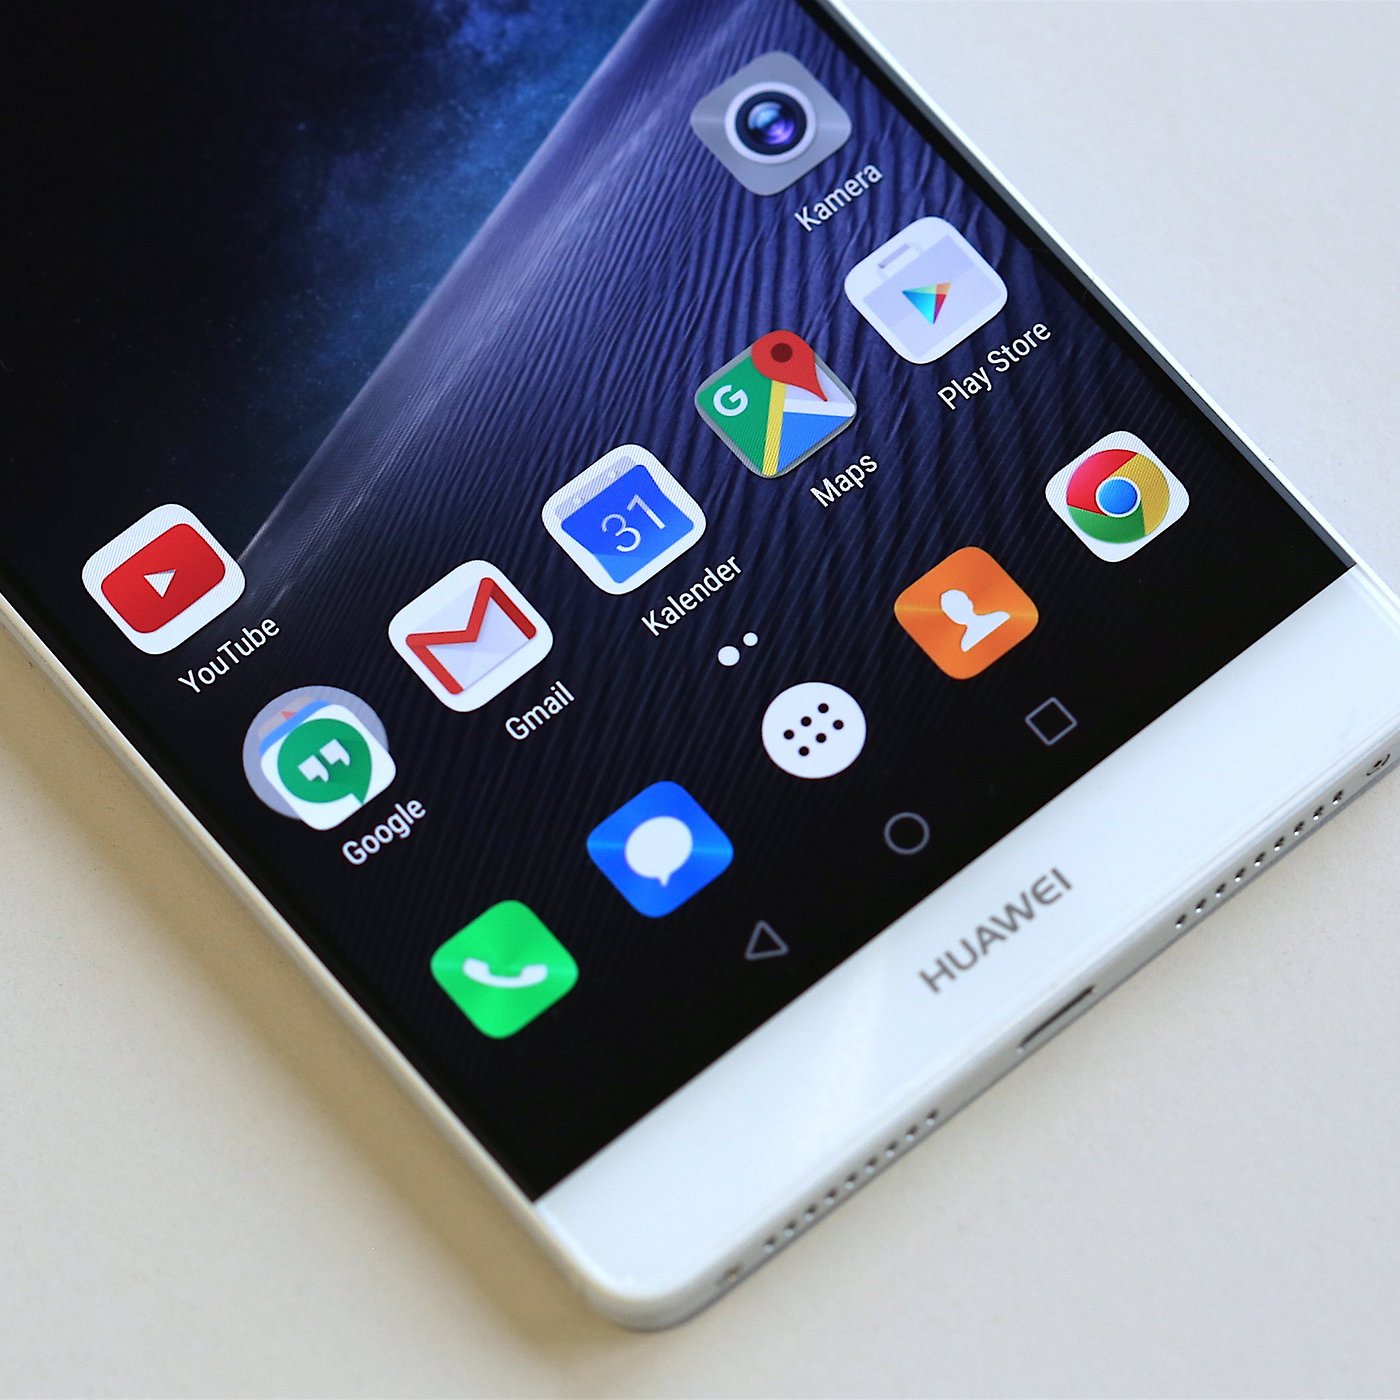 bijlage Vermenigvuldiging Behoefte aan 7 reasons to buy the Huawei Mate 8 | NextPit